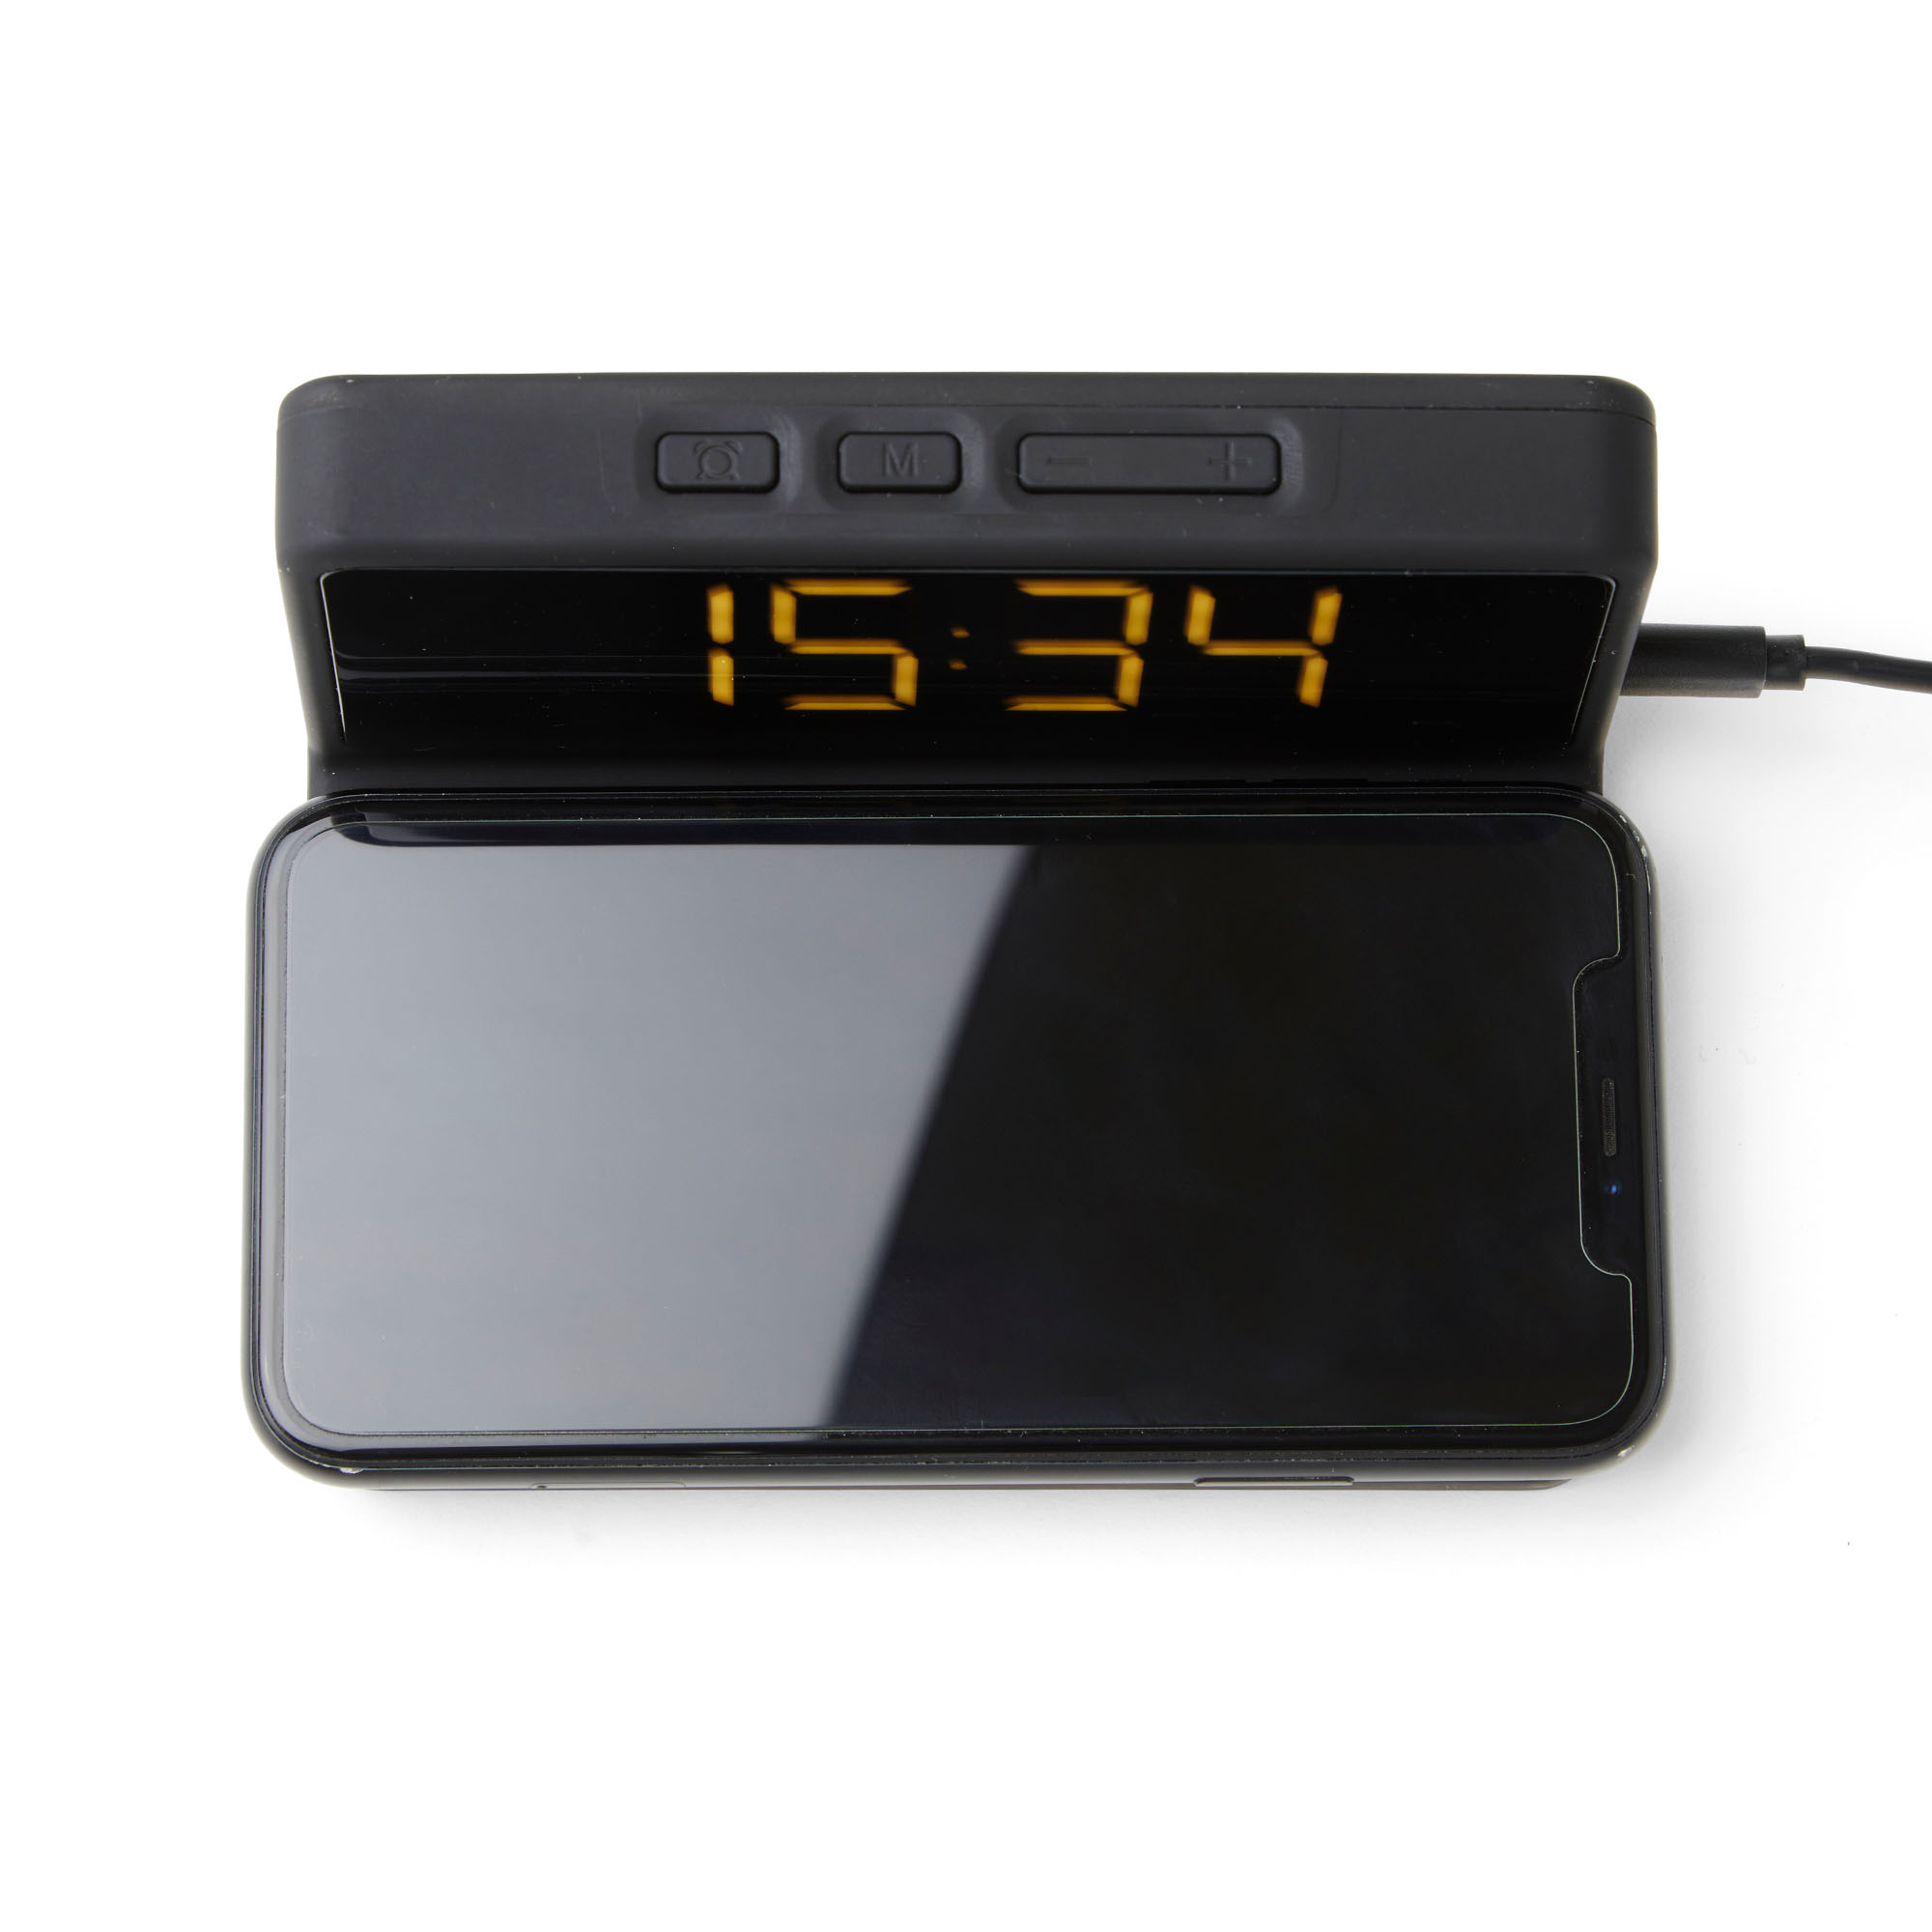 Stazione di ricarica con 4 funzioni: sveglia, calendario, termometro e  caricabatterie wireless DigiClock 